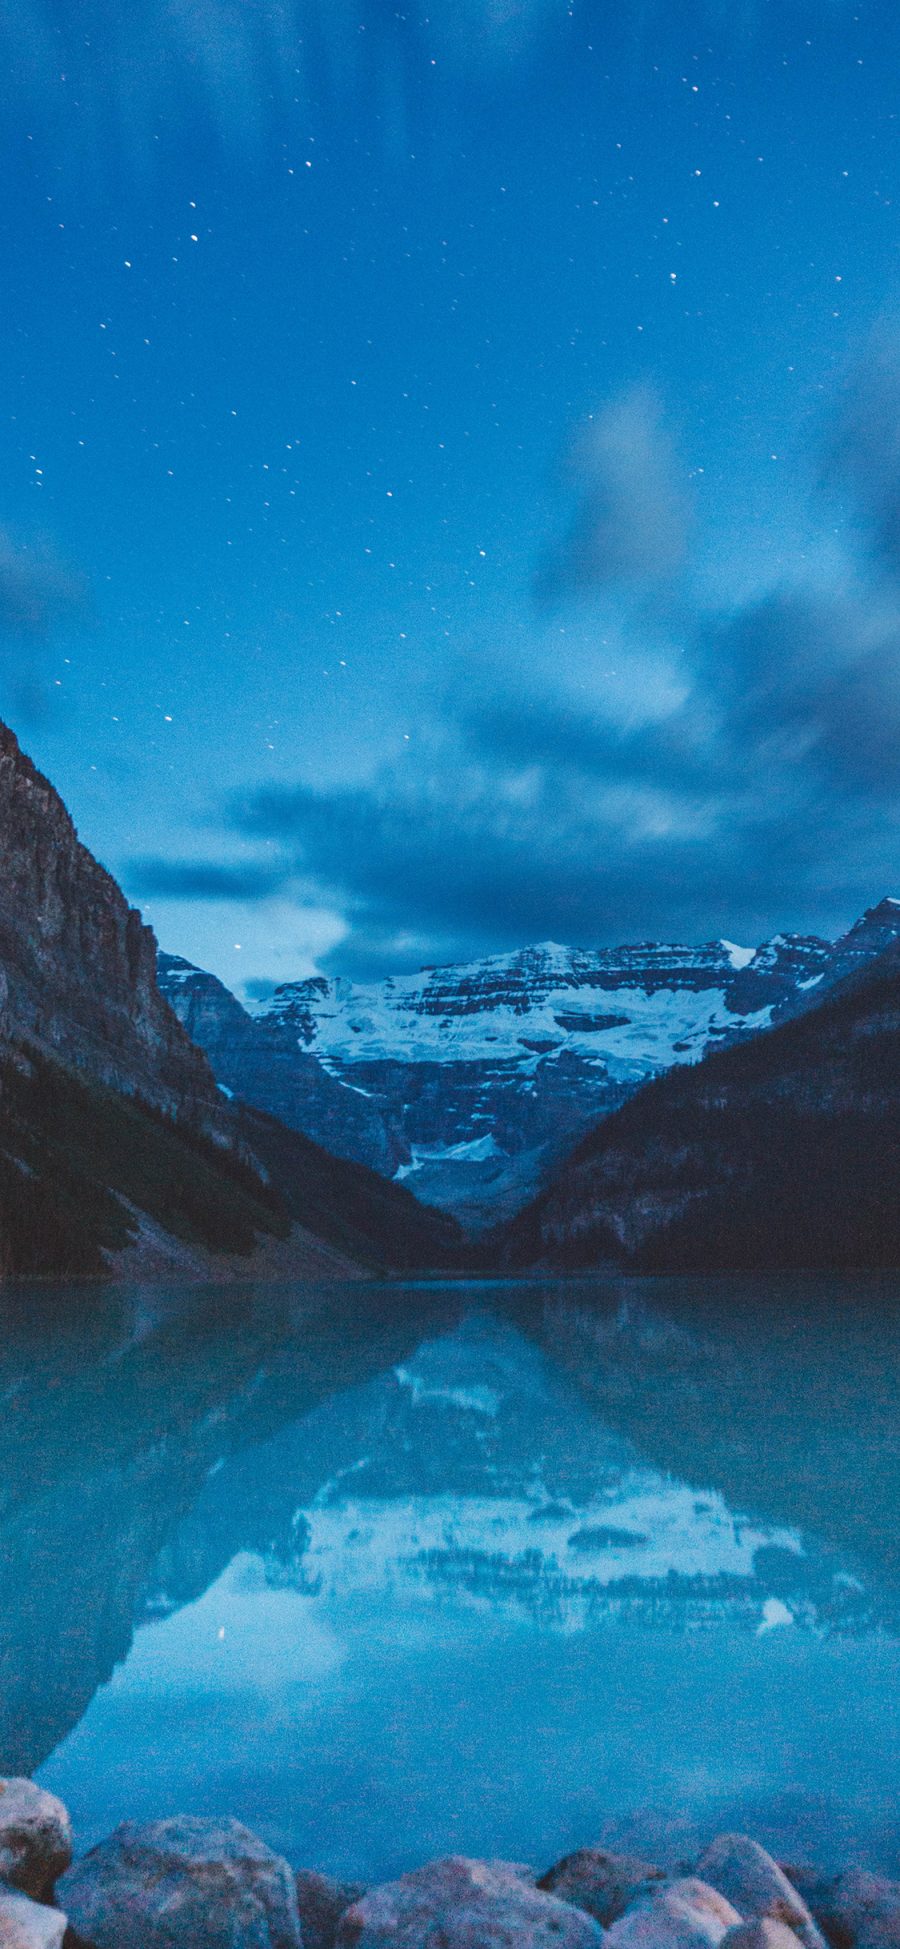 [2436×1125]大自然 云空 山峰 湖泊湛蓝 苹果手机壁纸图片